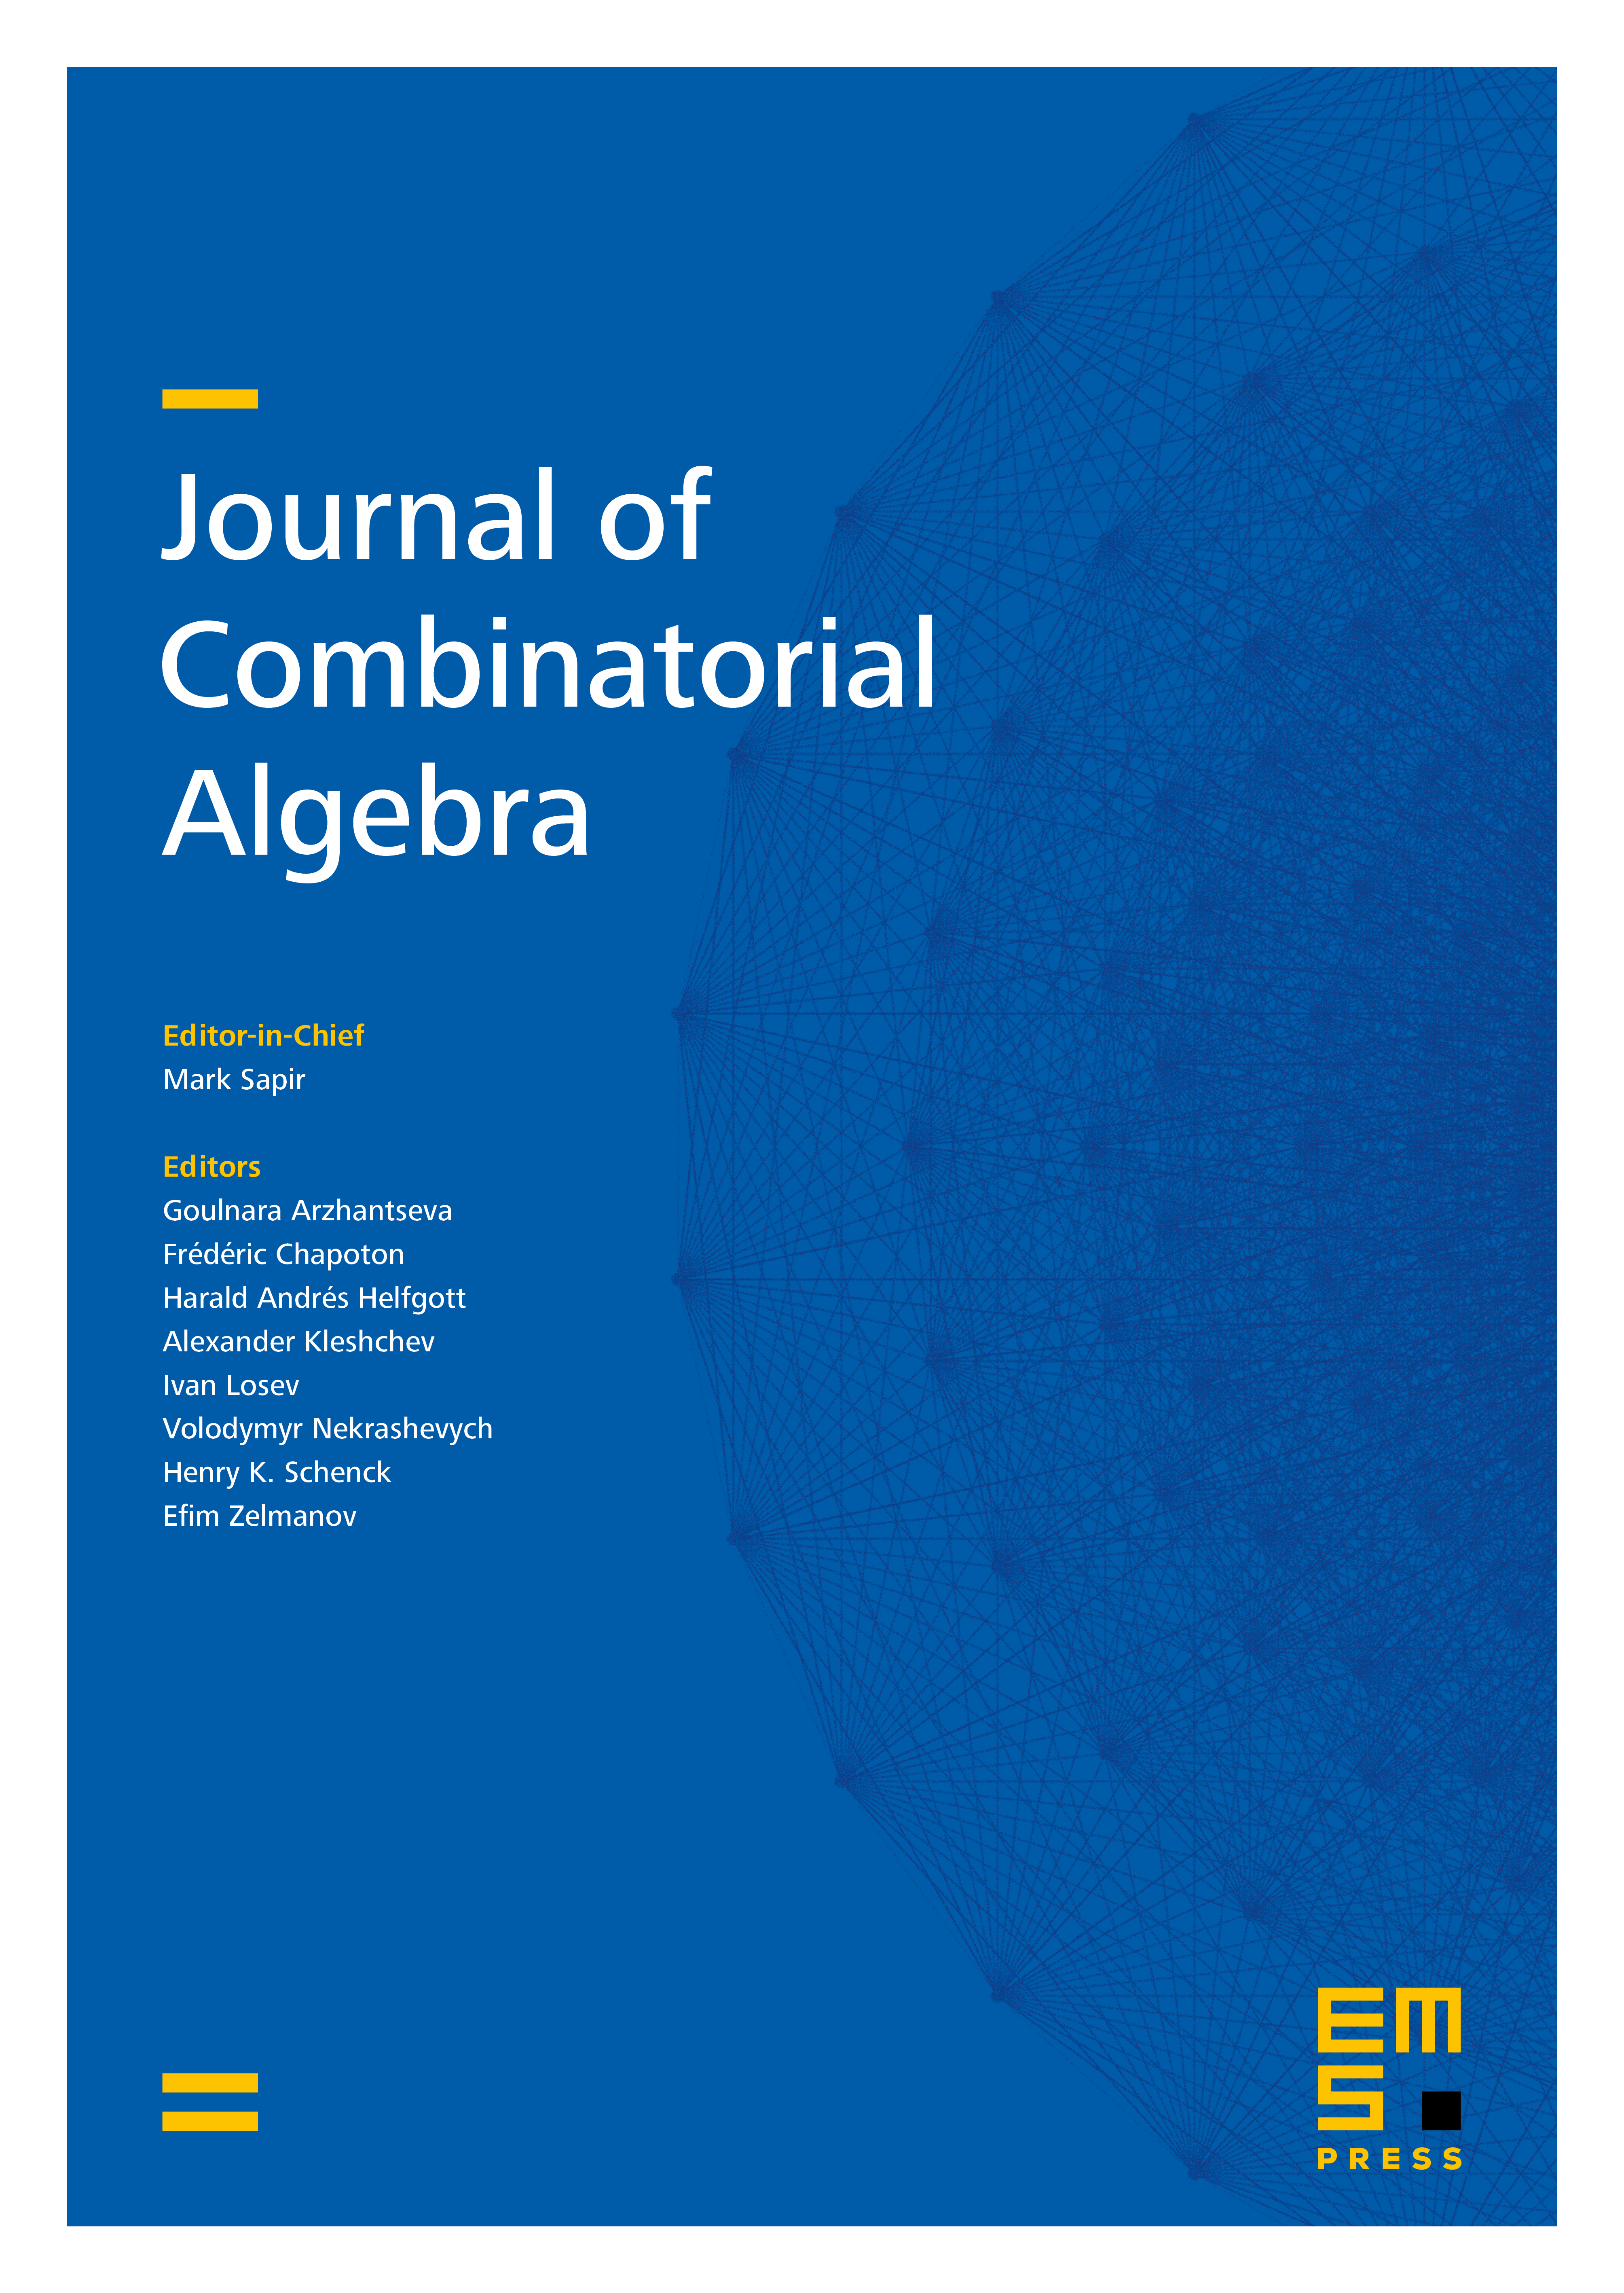 Journal of Combinatorial Algebra cover